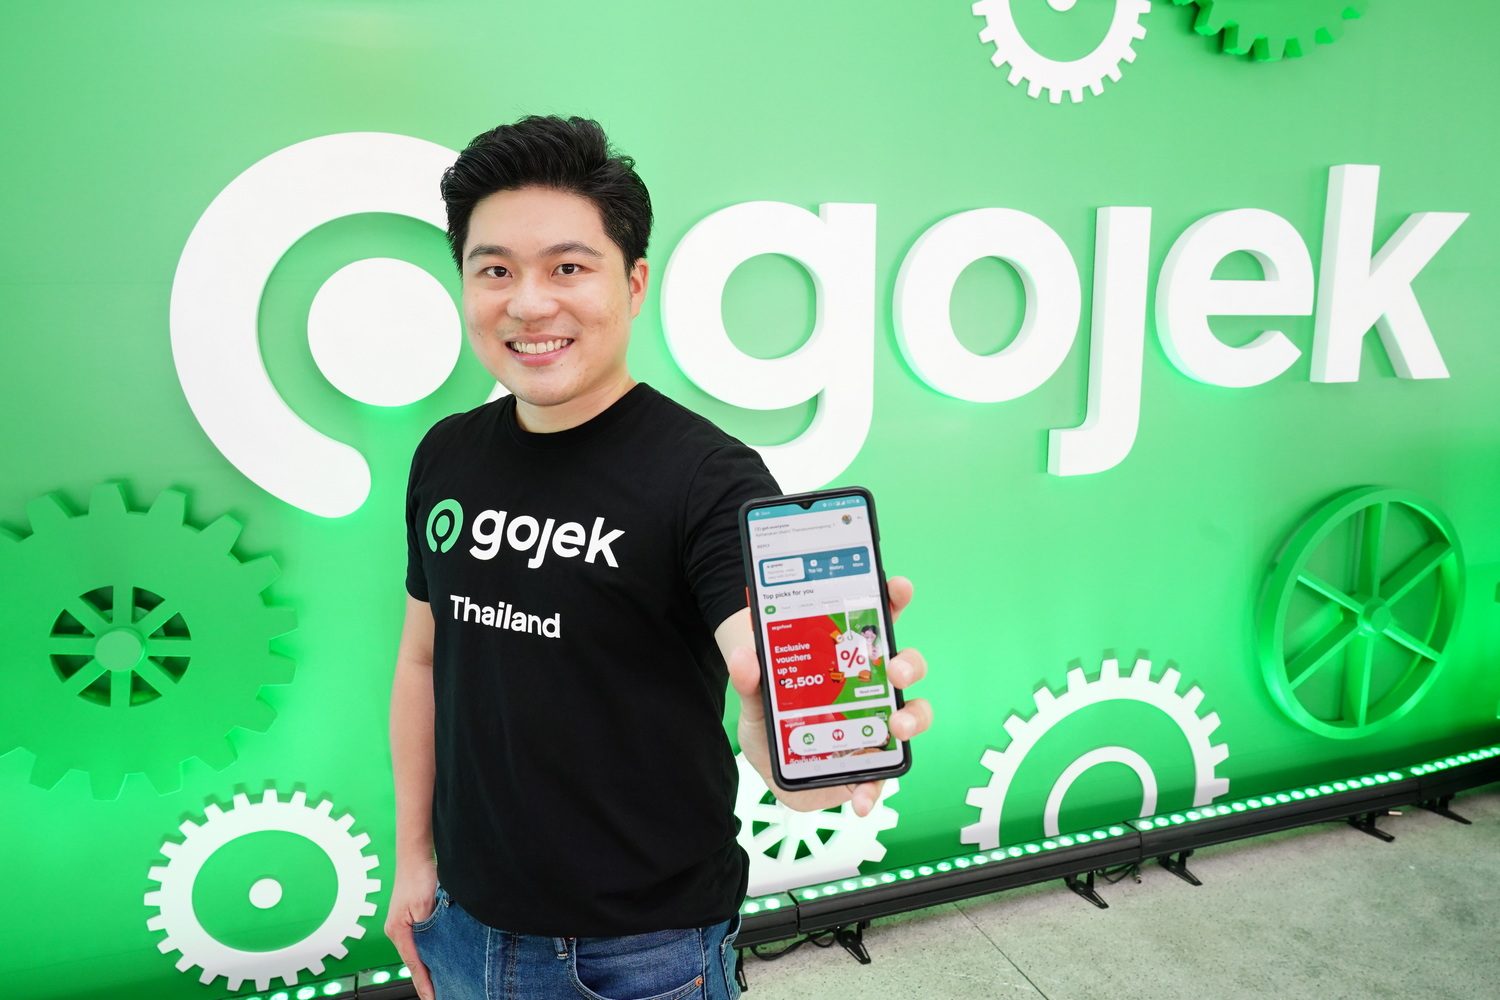 Gojek เปิดตัวในประเทศไทย ยกระดับการใช้ชีวิตประจำวัน